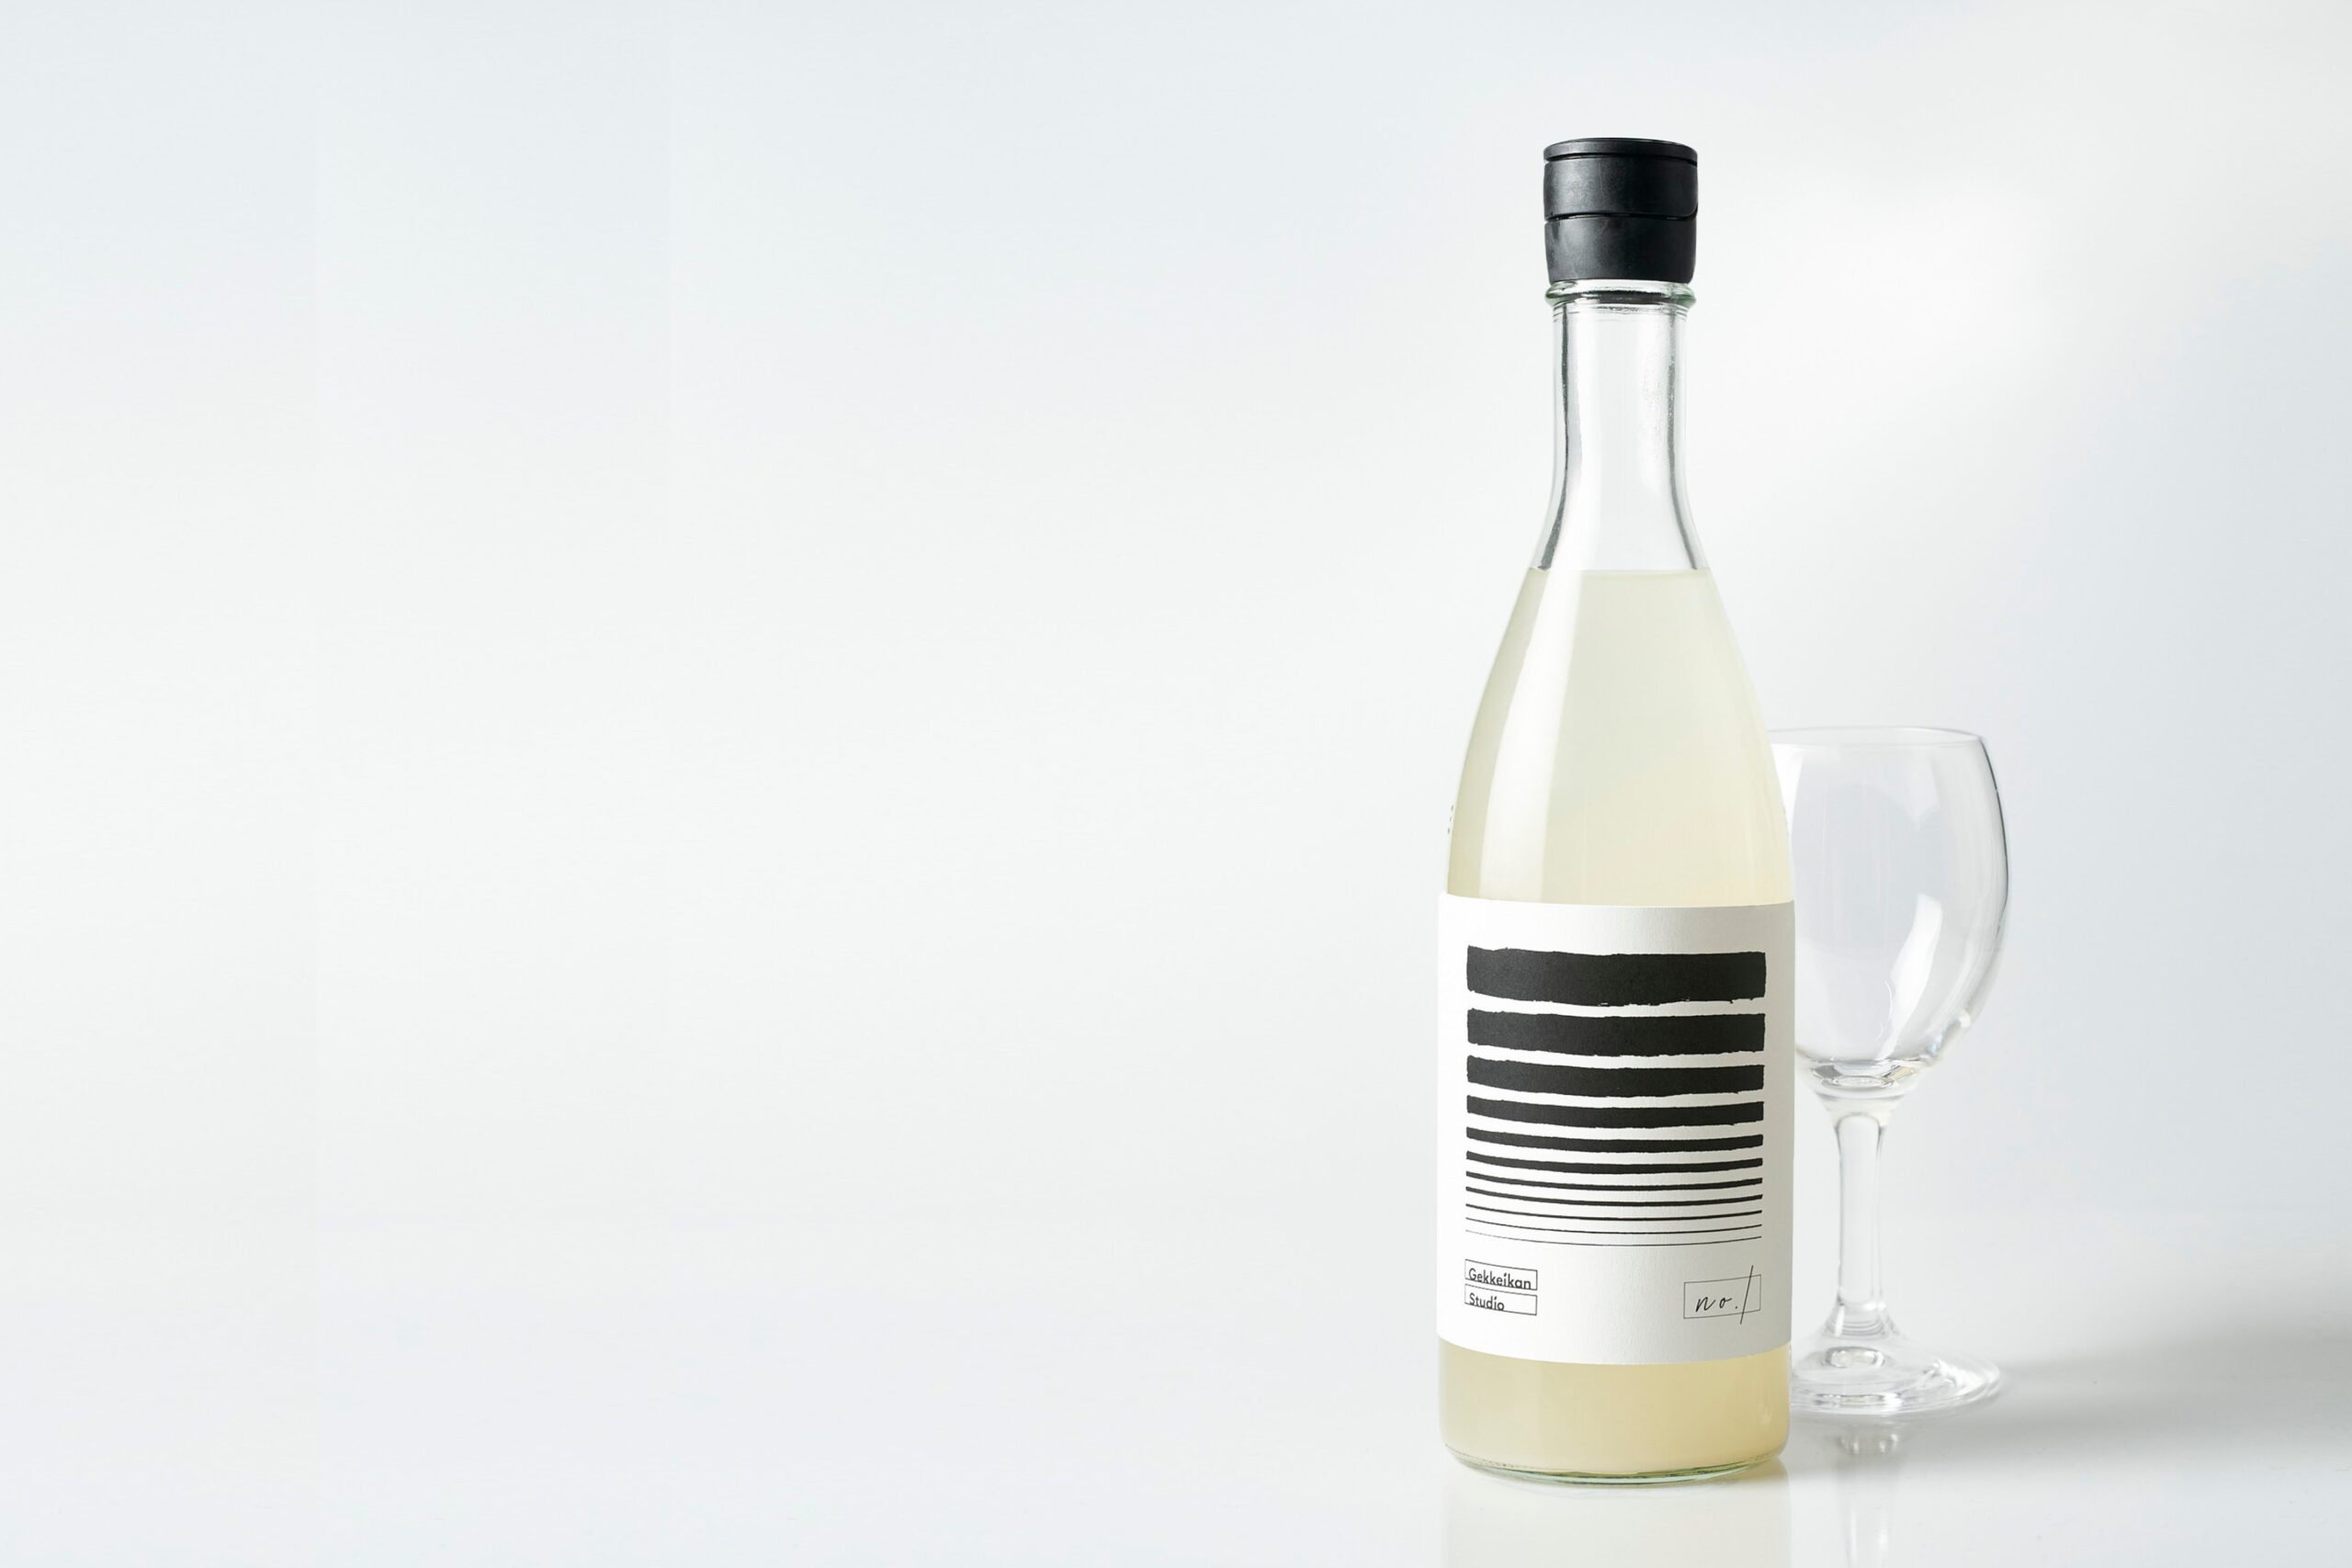 日本酒を進化させる実験的プロジェクト「Gekkeikan Studio」がスタート　～第1弾商品を今冬限定発売～